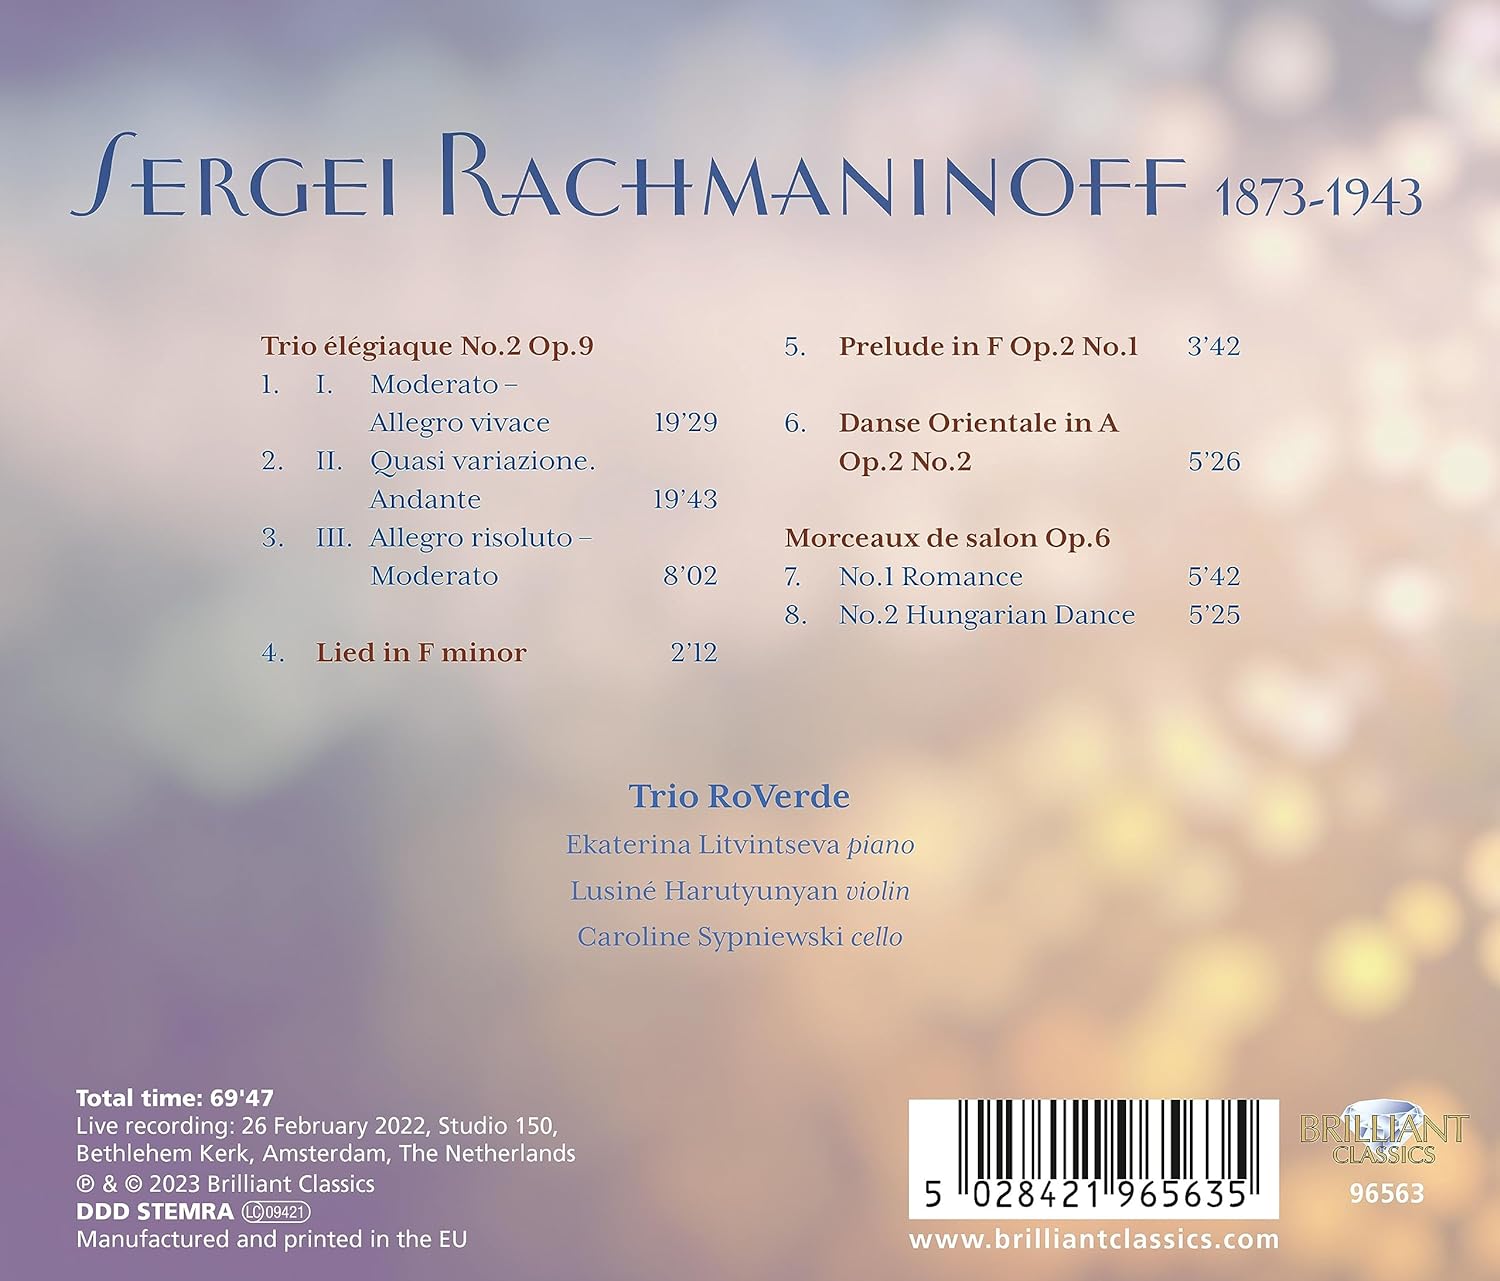 Trio RoVerde 라흐마니노프: 슬픔의 삼중주 제 2번 (Rachmaninoff: Trio Elegiaque No.2 Op.9)